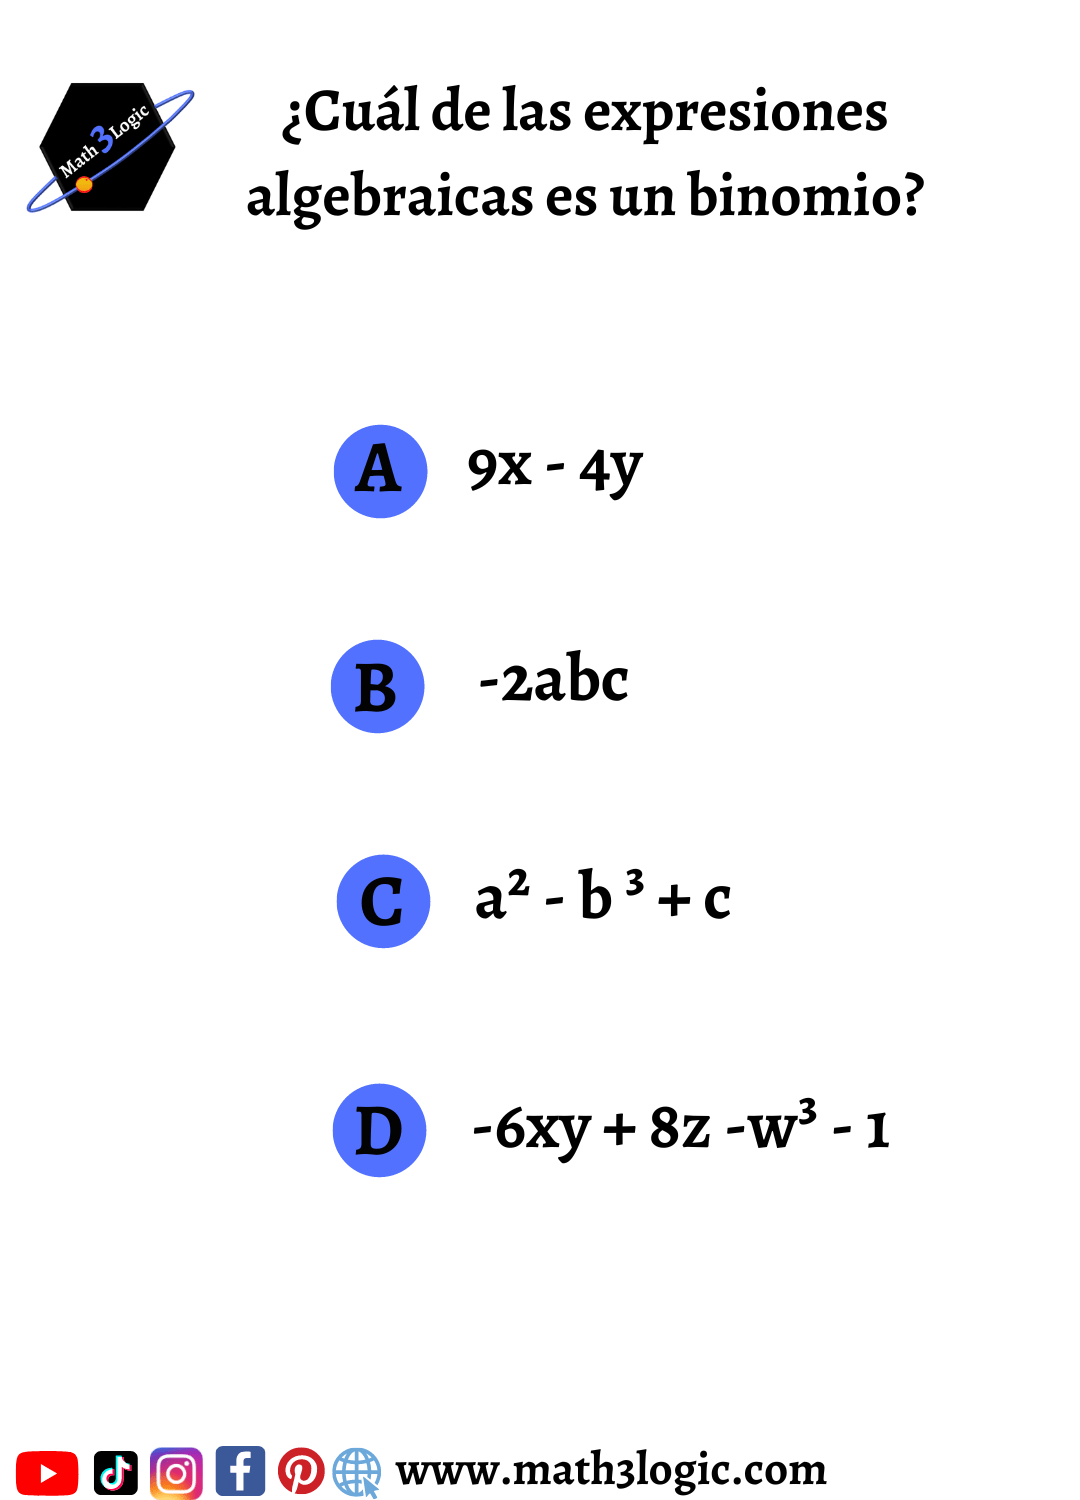 Expresiones algebraicas ejercicios4 math3logic